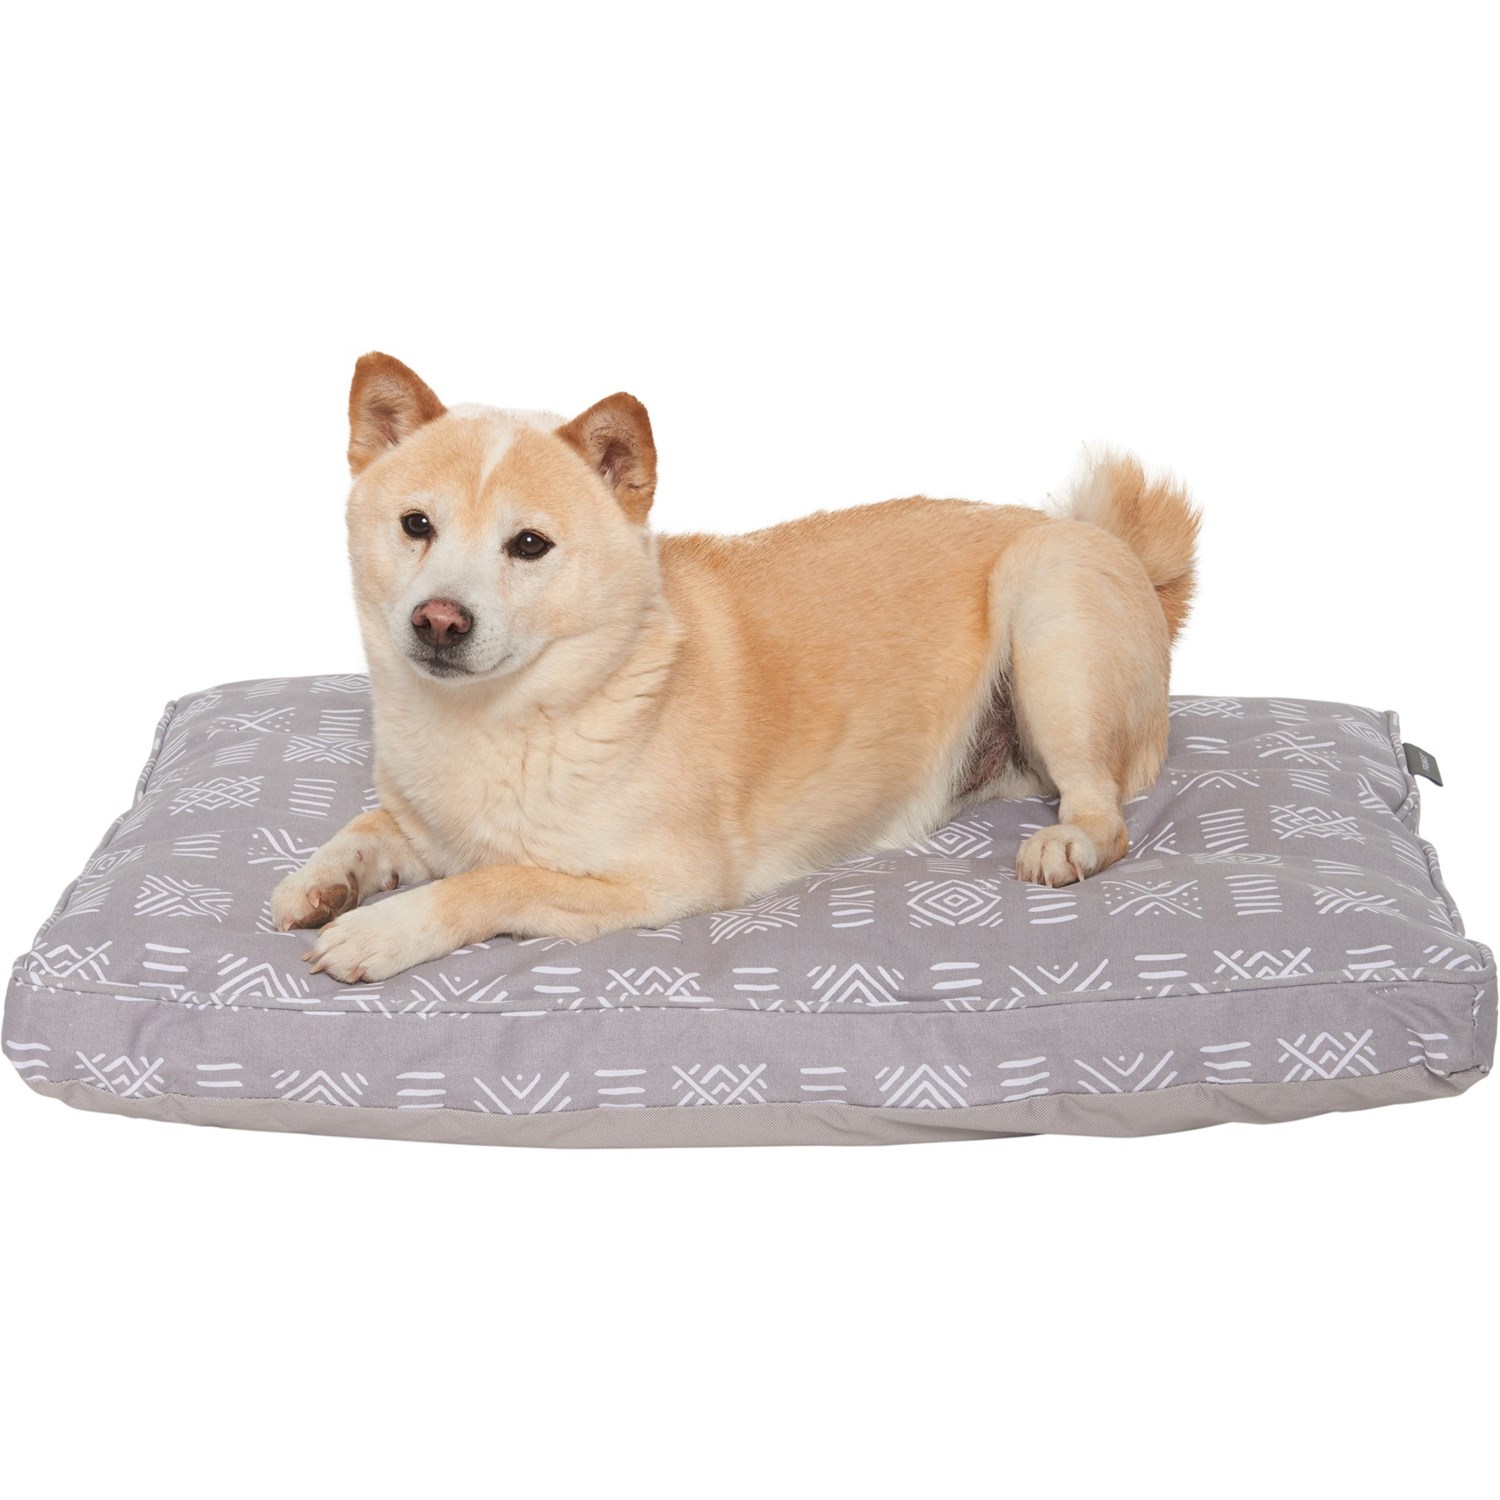 Fringe Brand Dog Bed